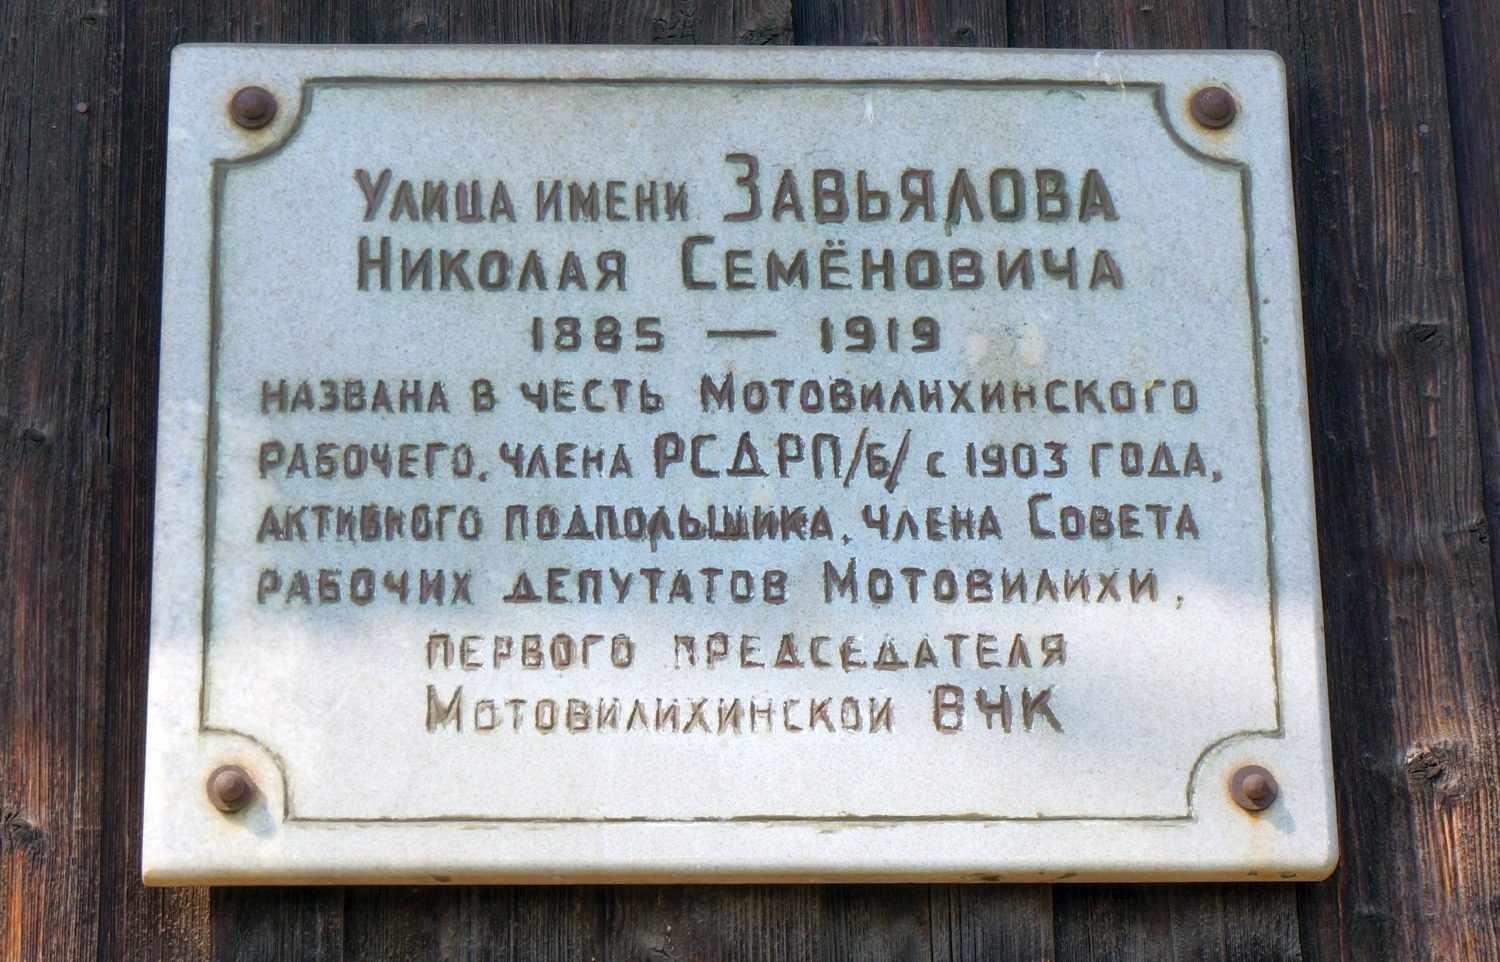 Perm, Улица Старых Большевиков, 55. Perm — Memorial plaques